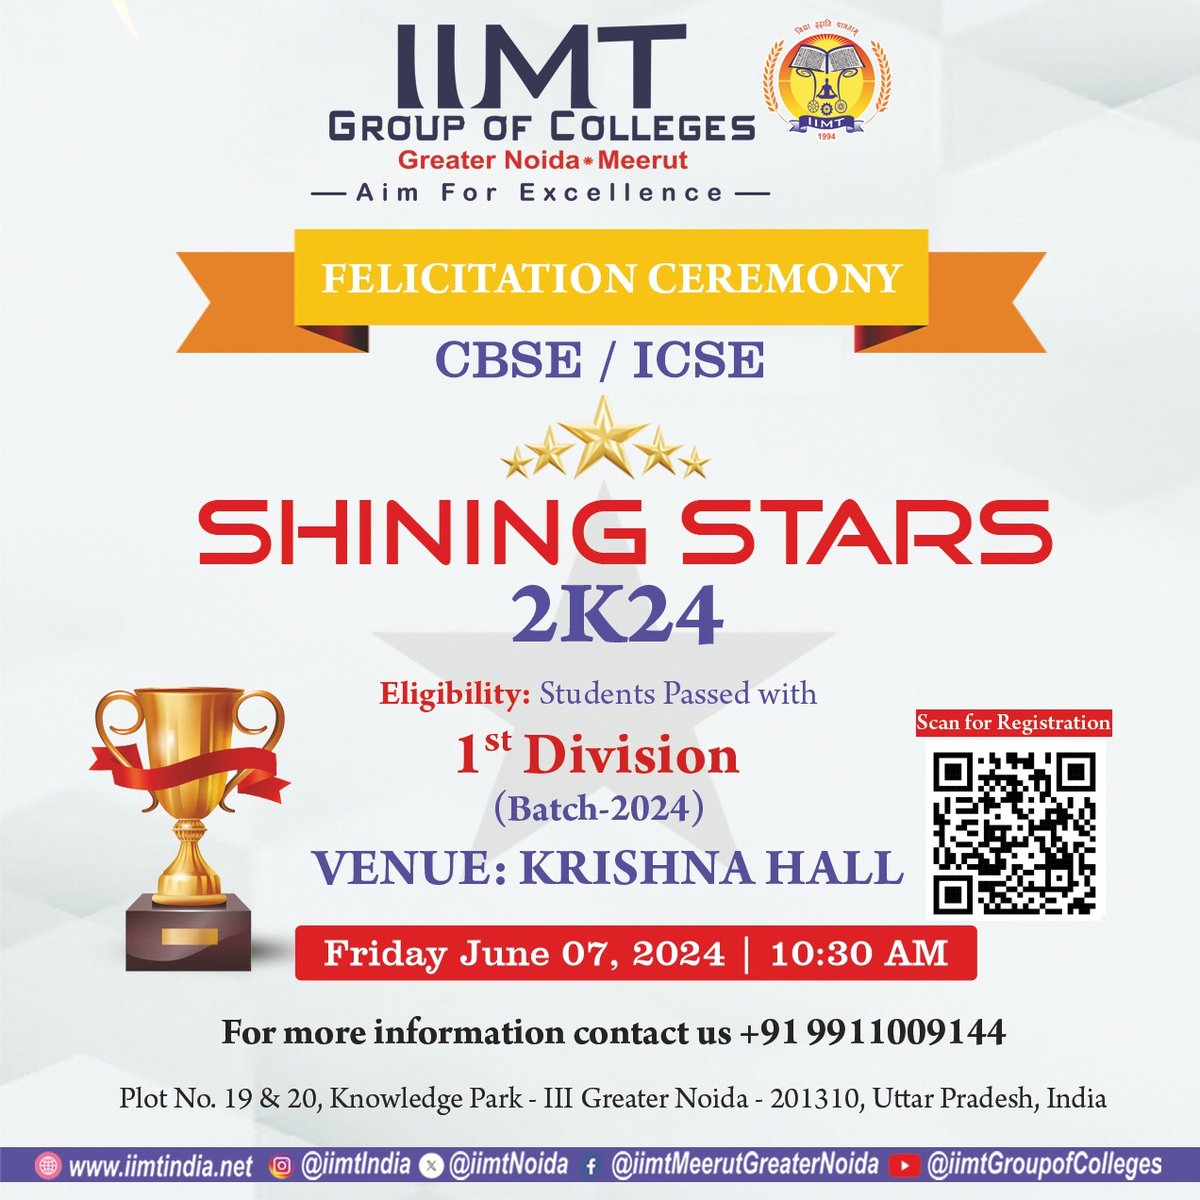 Shining Stars 2k24 Felicitation Ceremony ✨

📚 Eligibility: Students who have passed with 1st Division in the 2024 batch.

.
iimtindia.net
Call Us: 9520886860
.
#IIMTIndia #IIMTNoida #IIMTGreaterNoida #IIMTDelhiNCR #IIMTian
#ShiningStars2k24 #FelicitationCeremony #CBSE